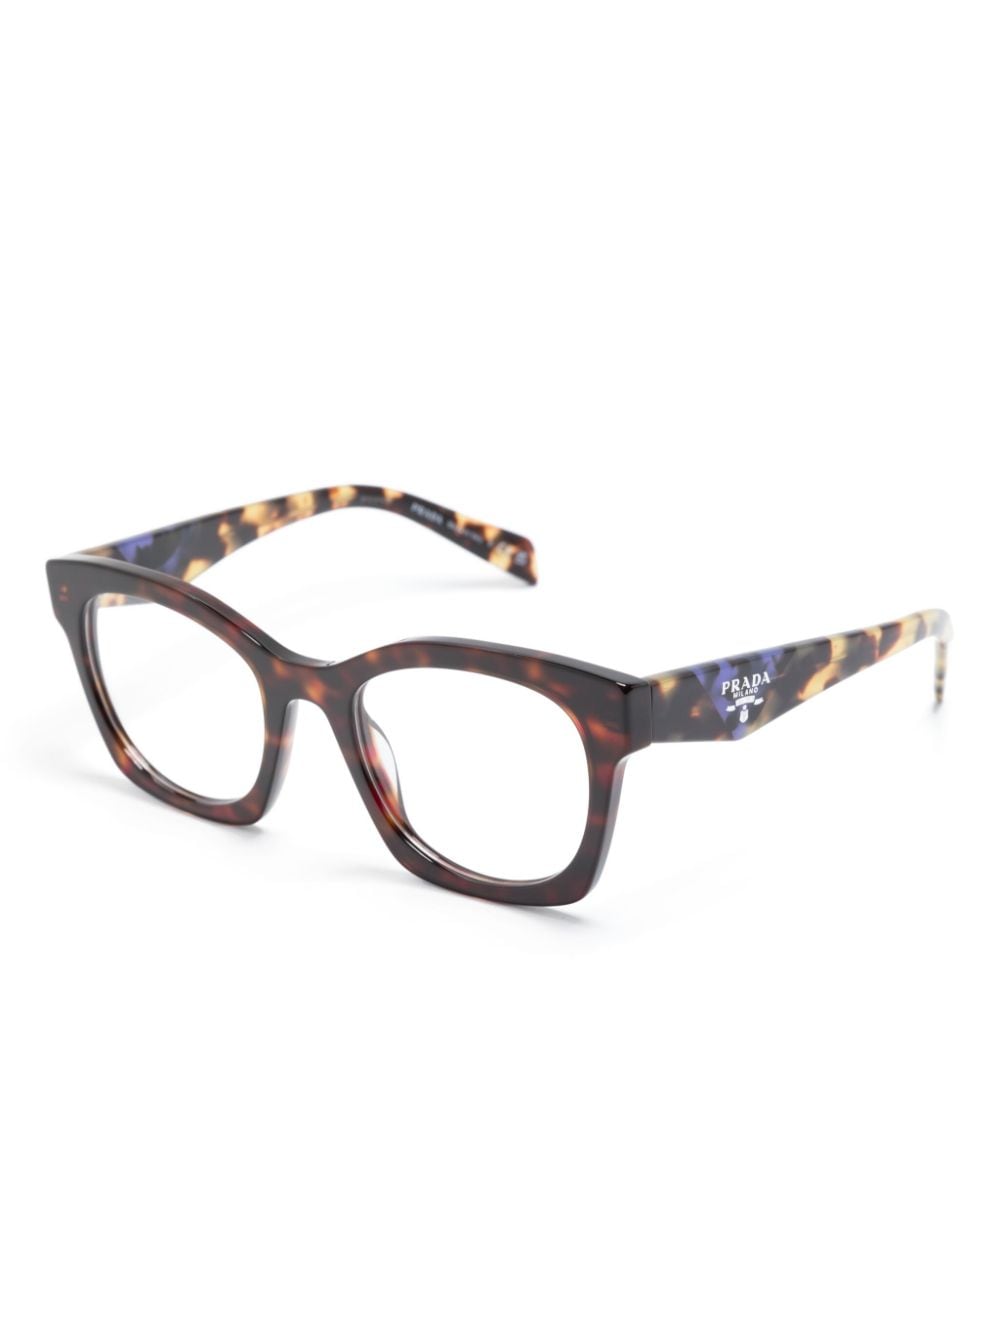 Prada Eyewear tortoiseshell D-frame glasses - Bruin